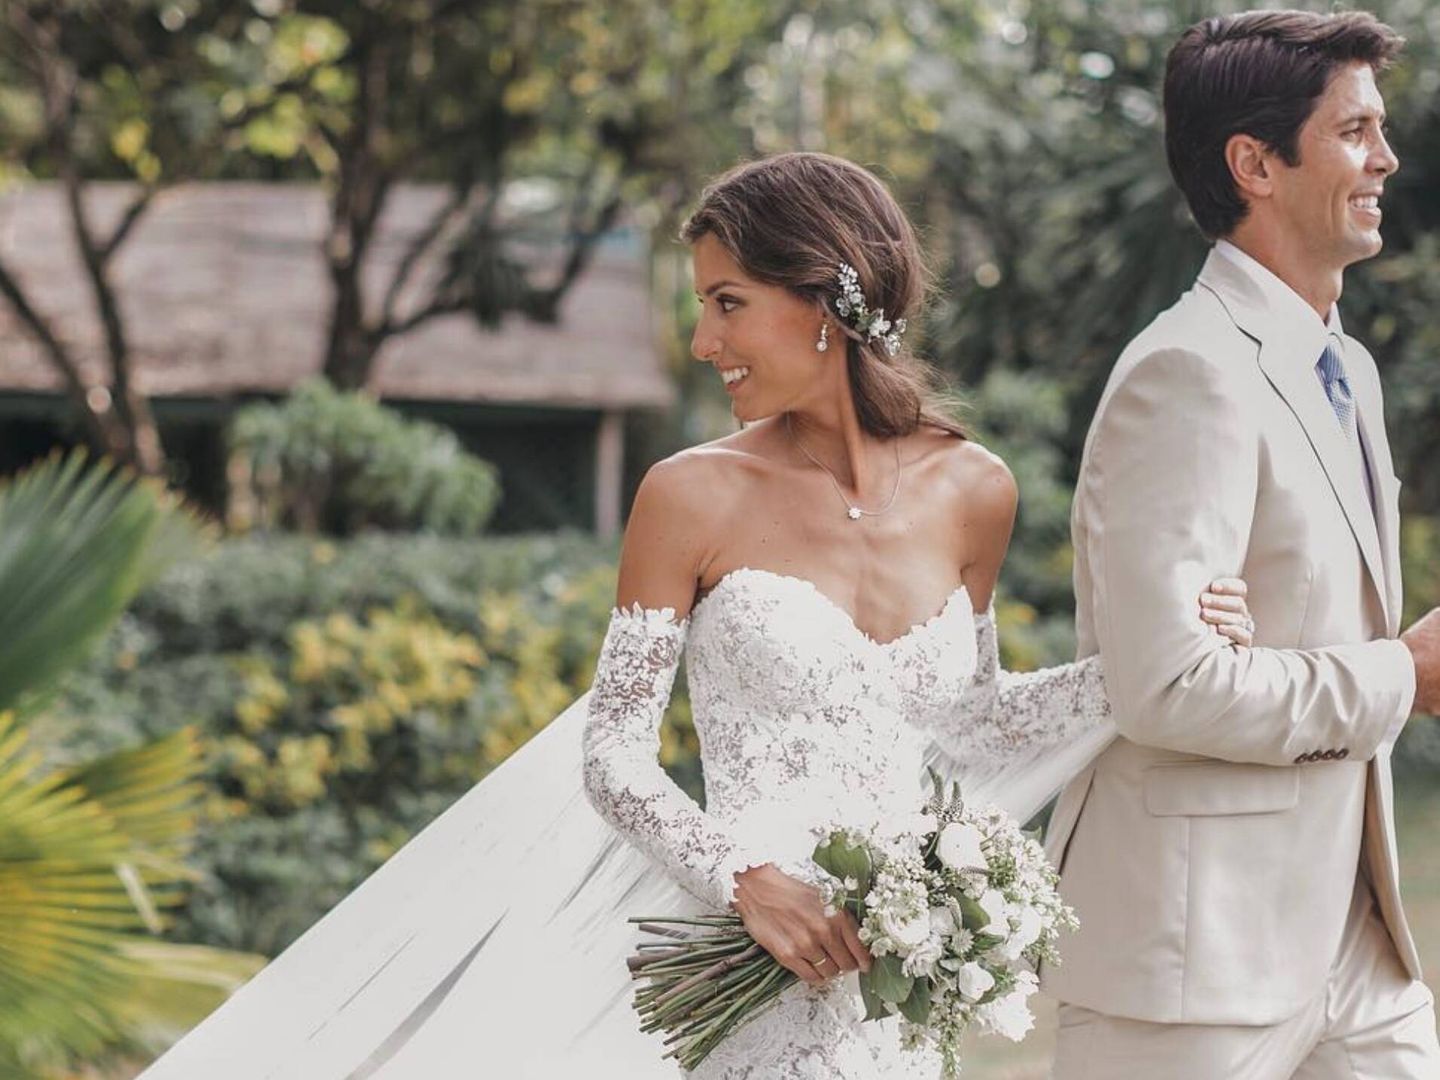 Ana Boyer y Fernando Verdasco, el día de su boda. (Instagram/@serafin_castillo)